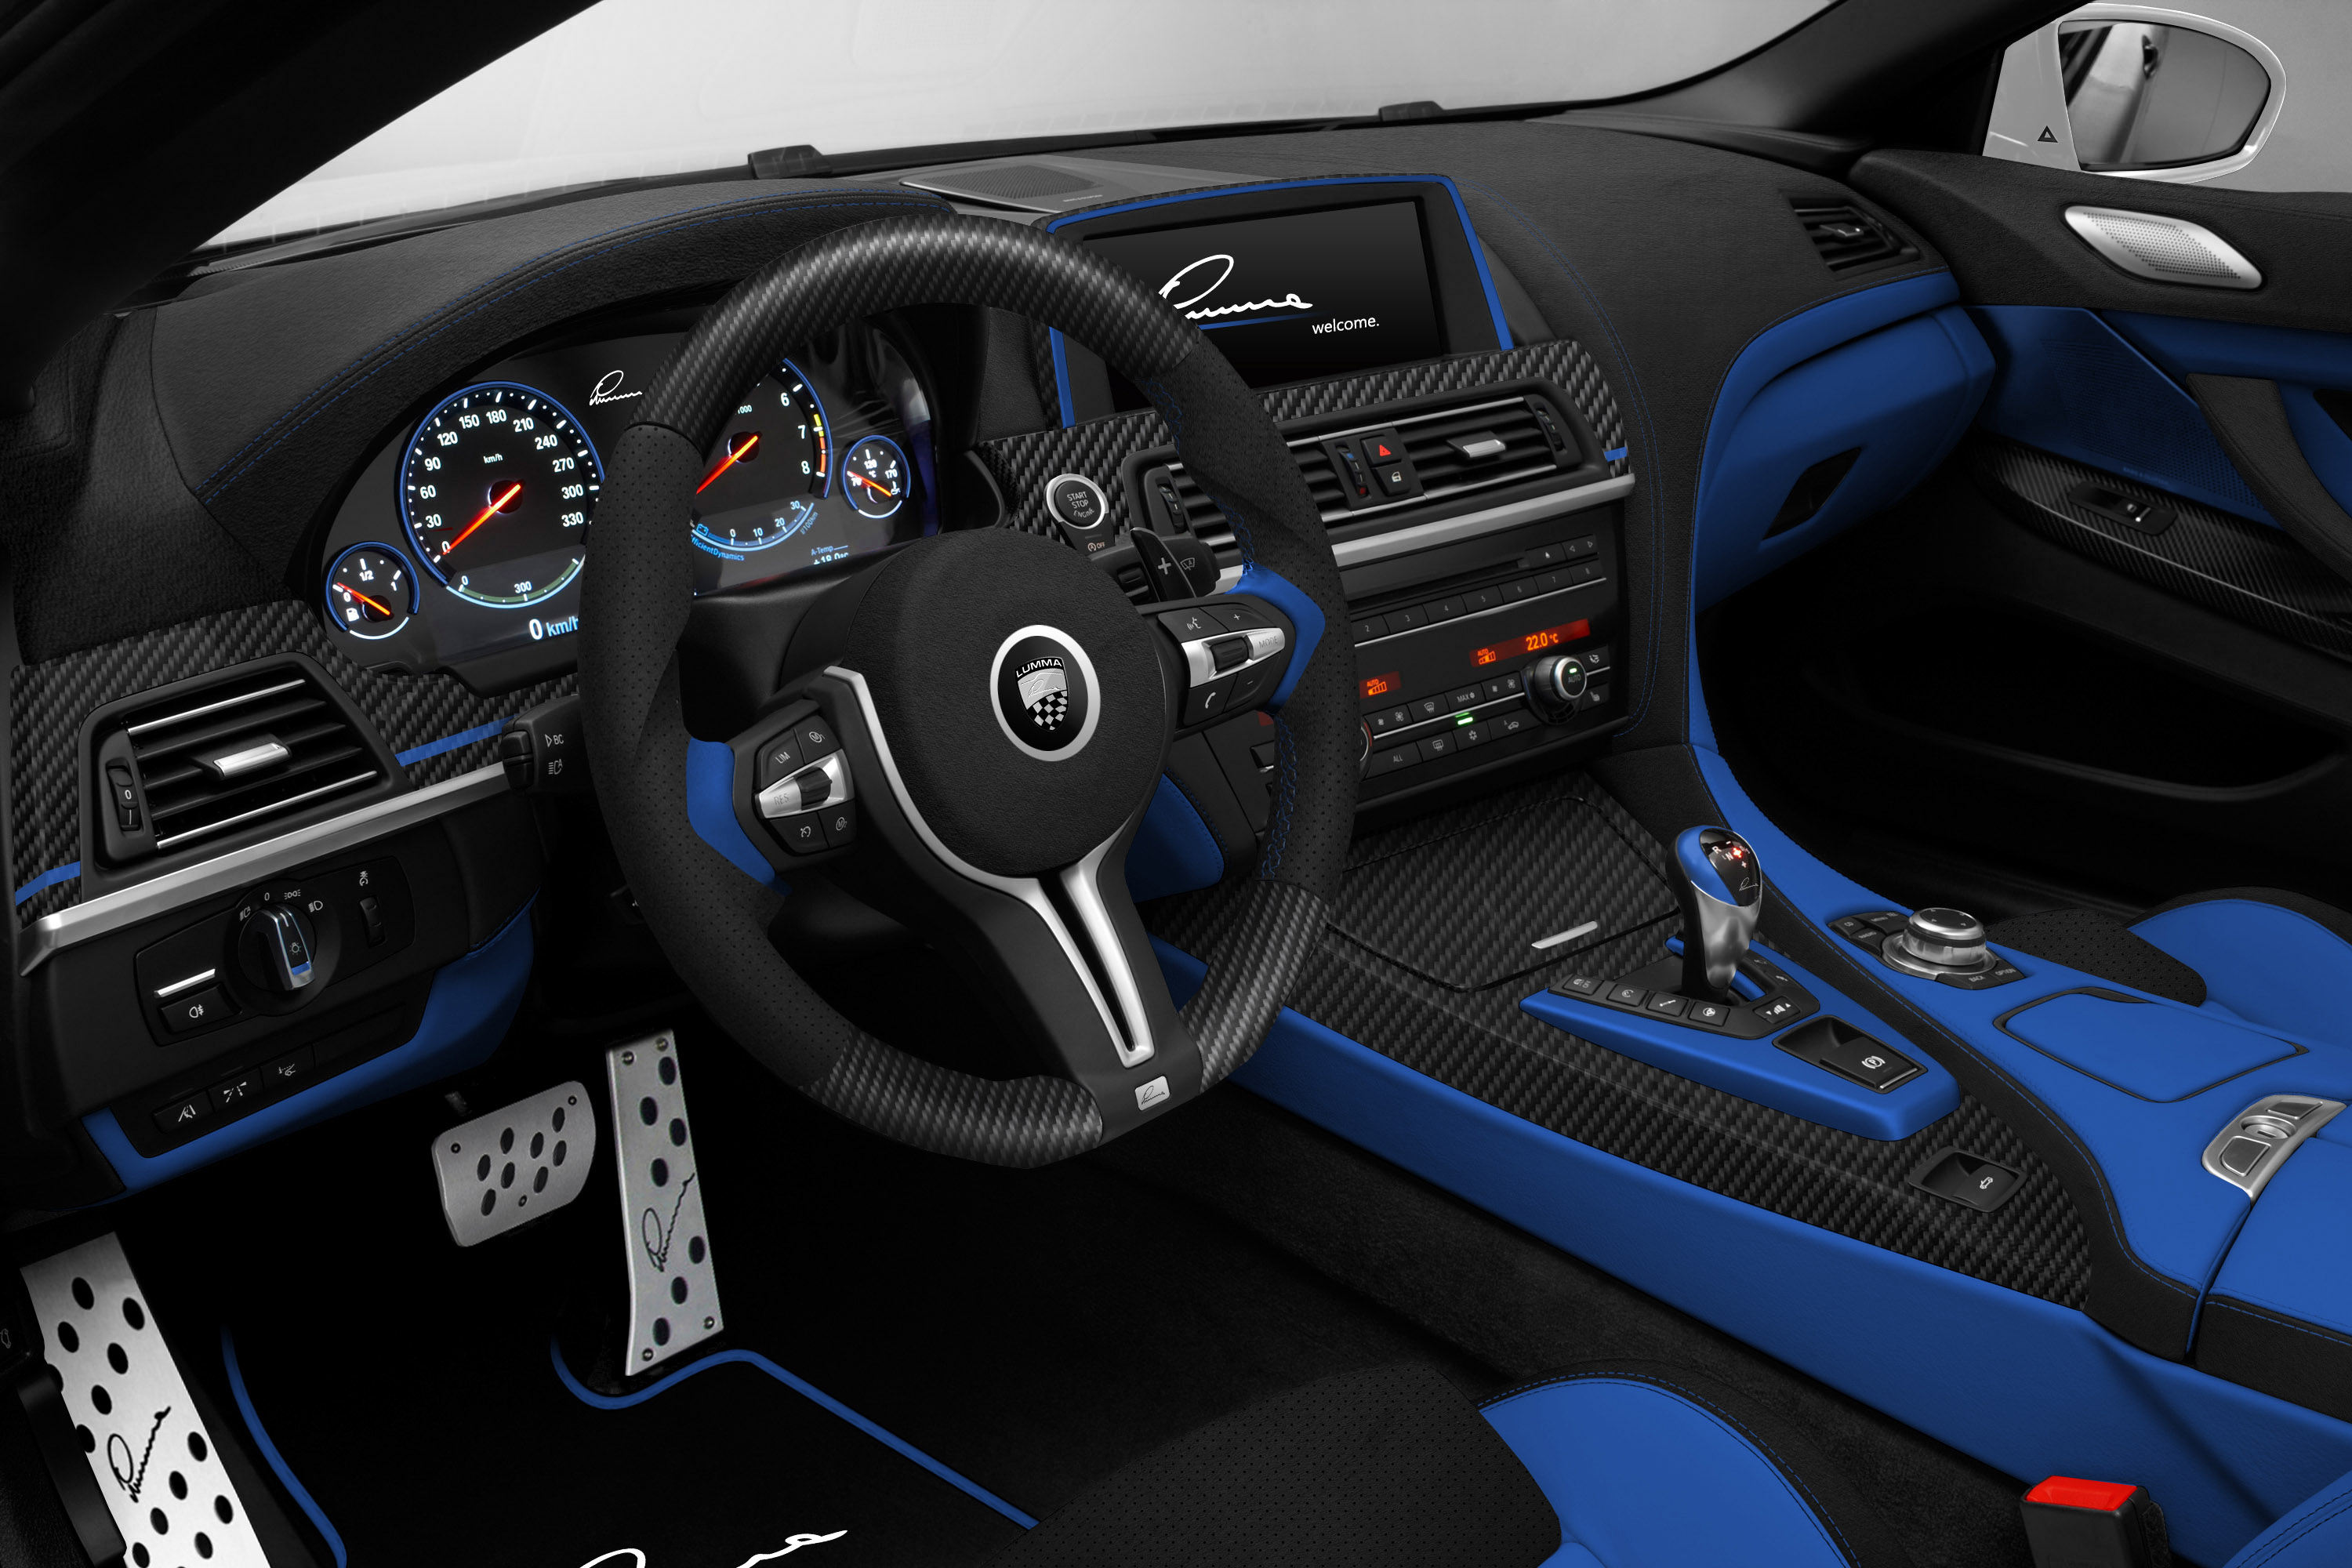 Lumma Design BMW M6